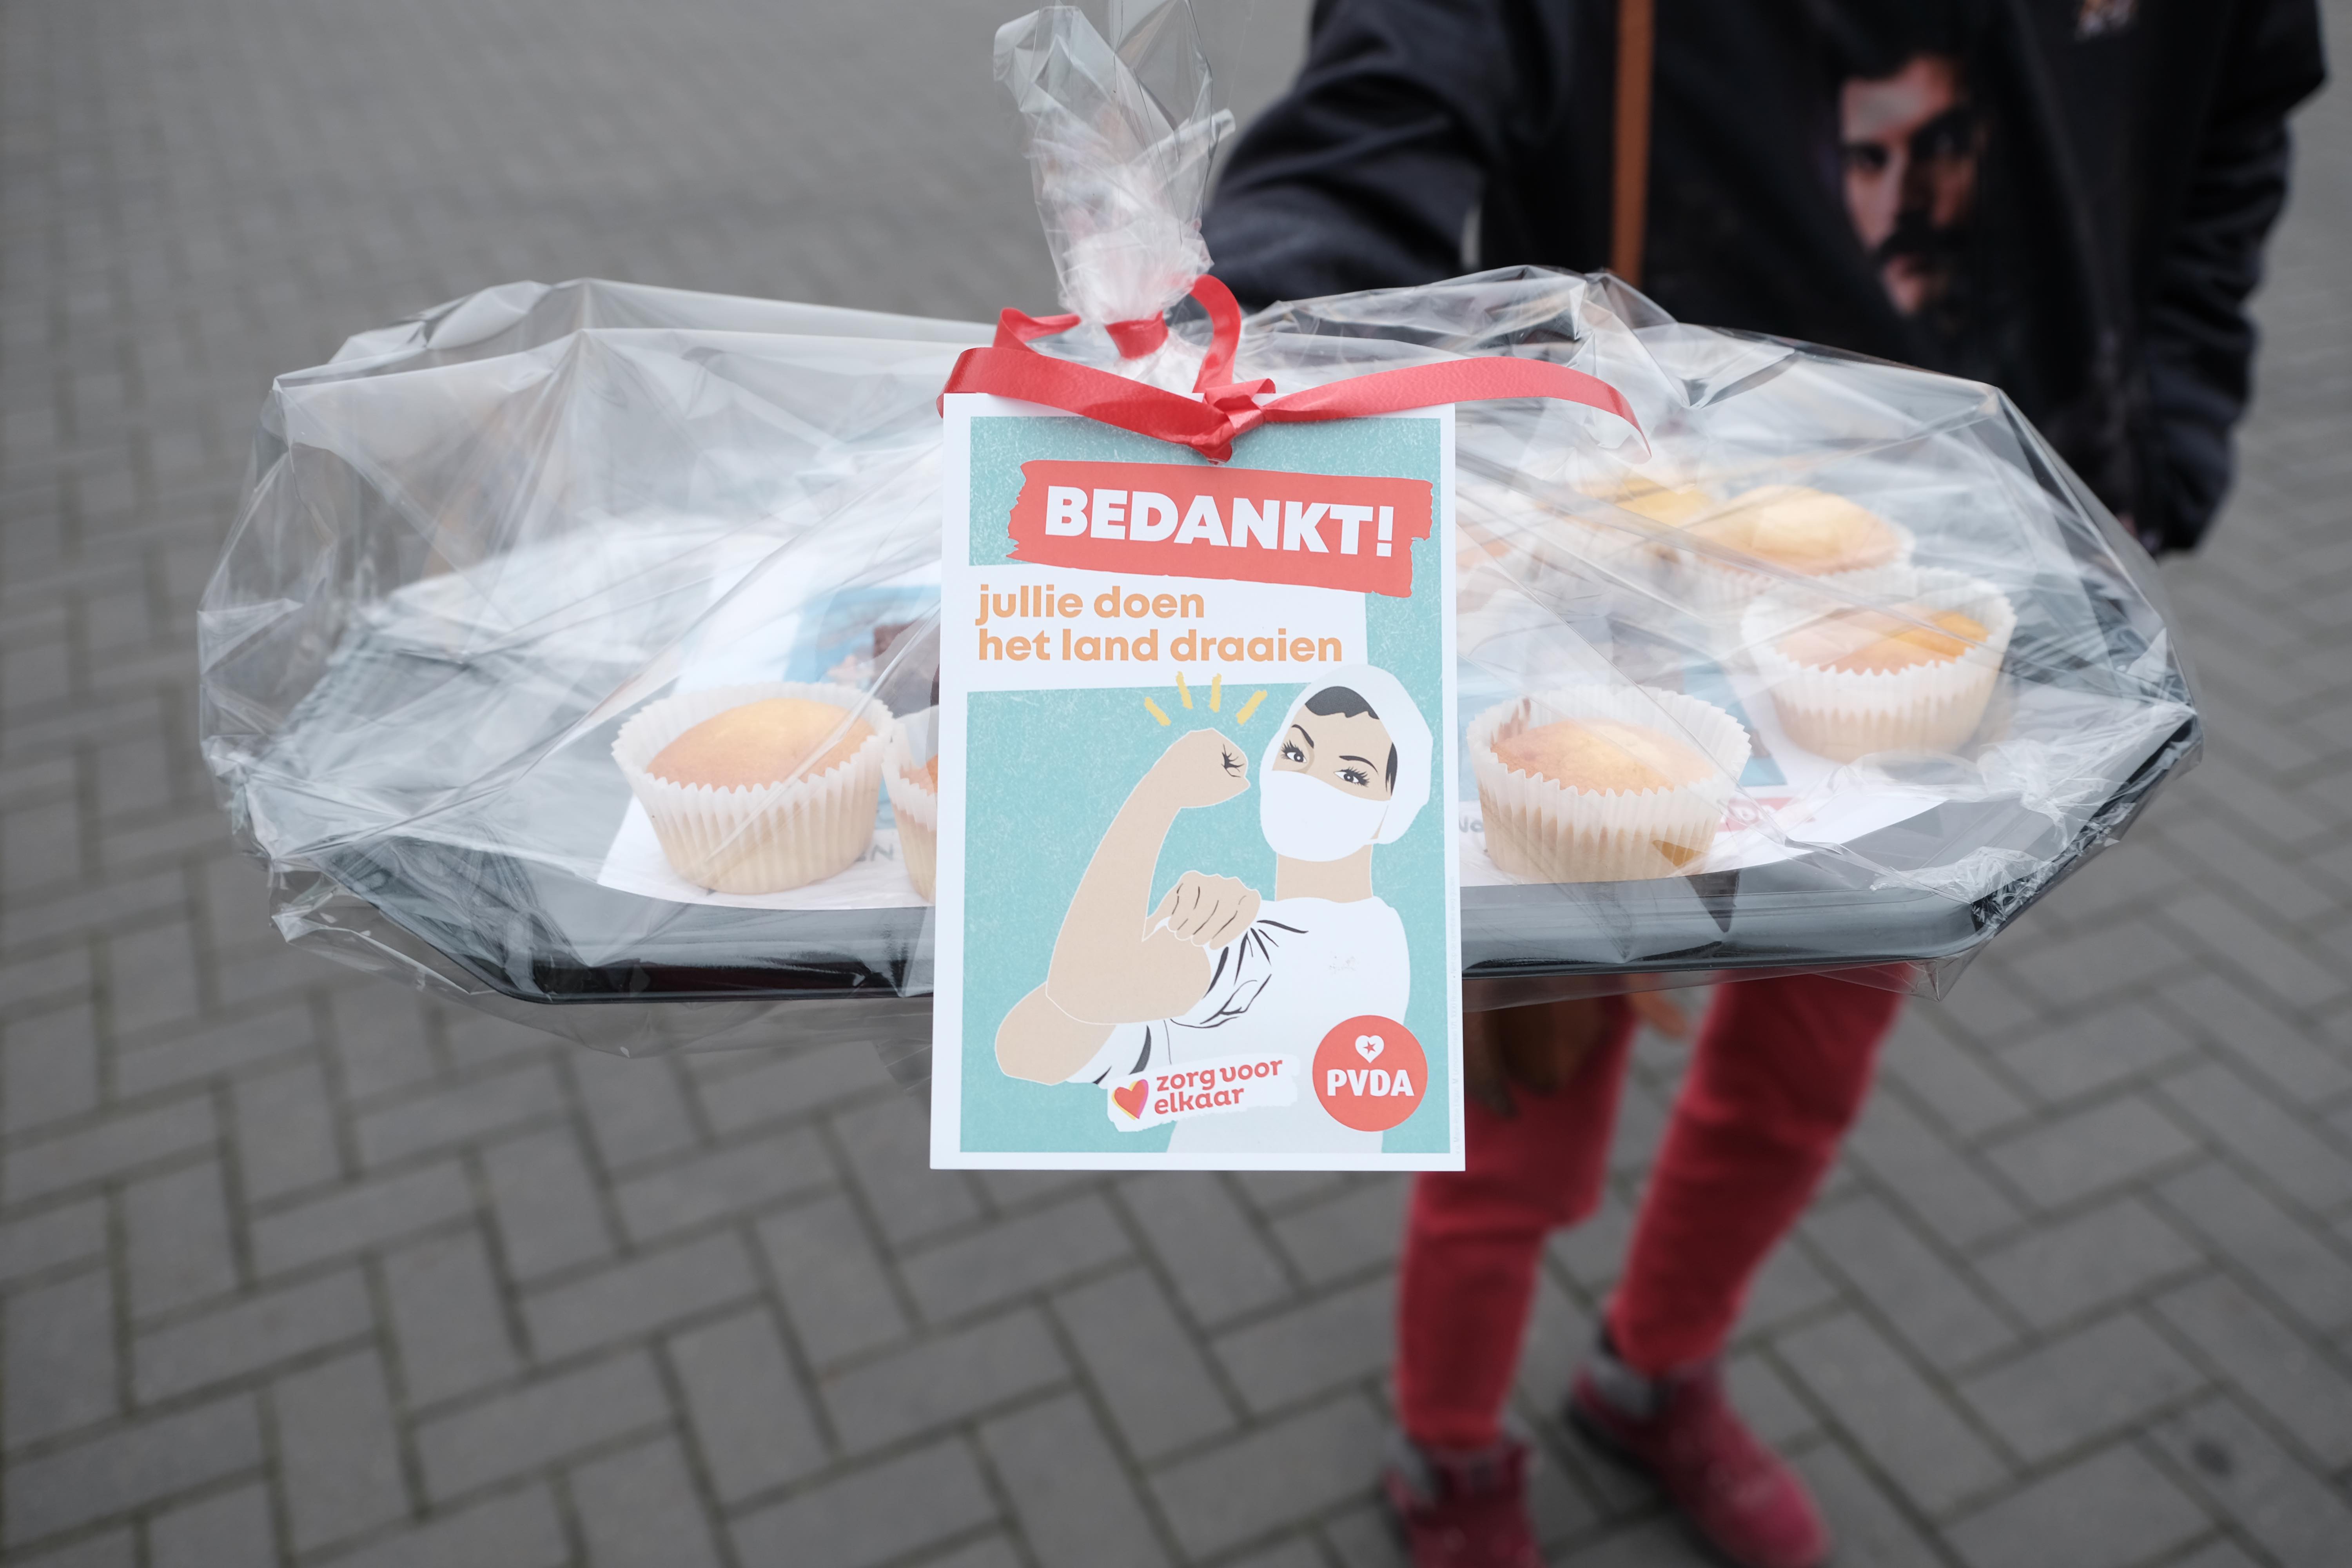 PVDA Bakt muffins, cakes en brownies voor de “winter van de solidariteit”